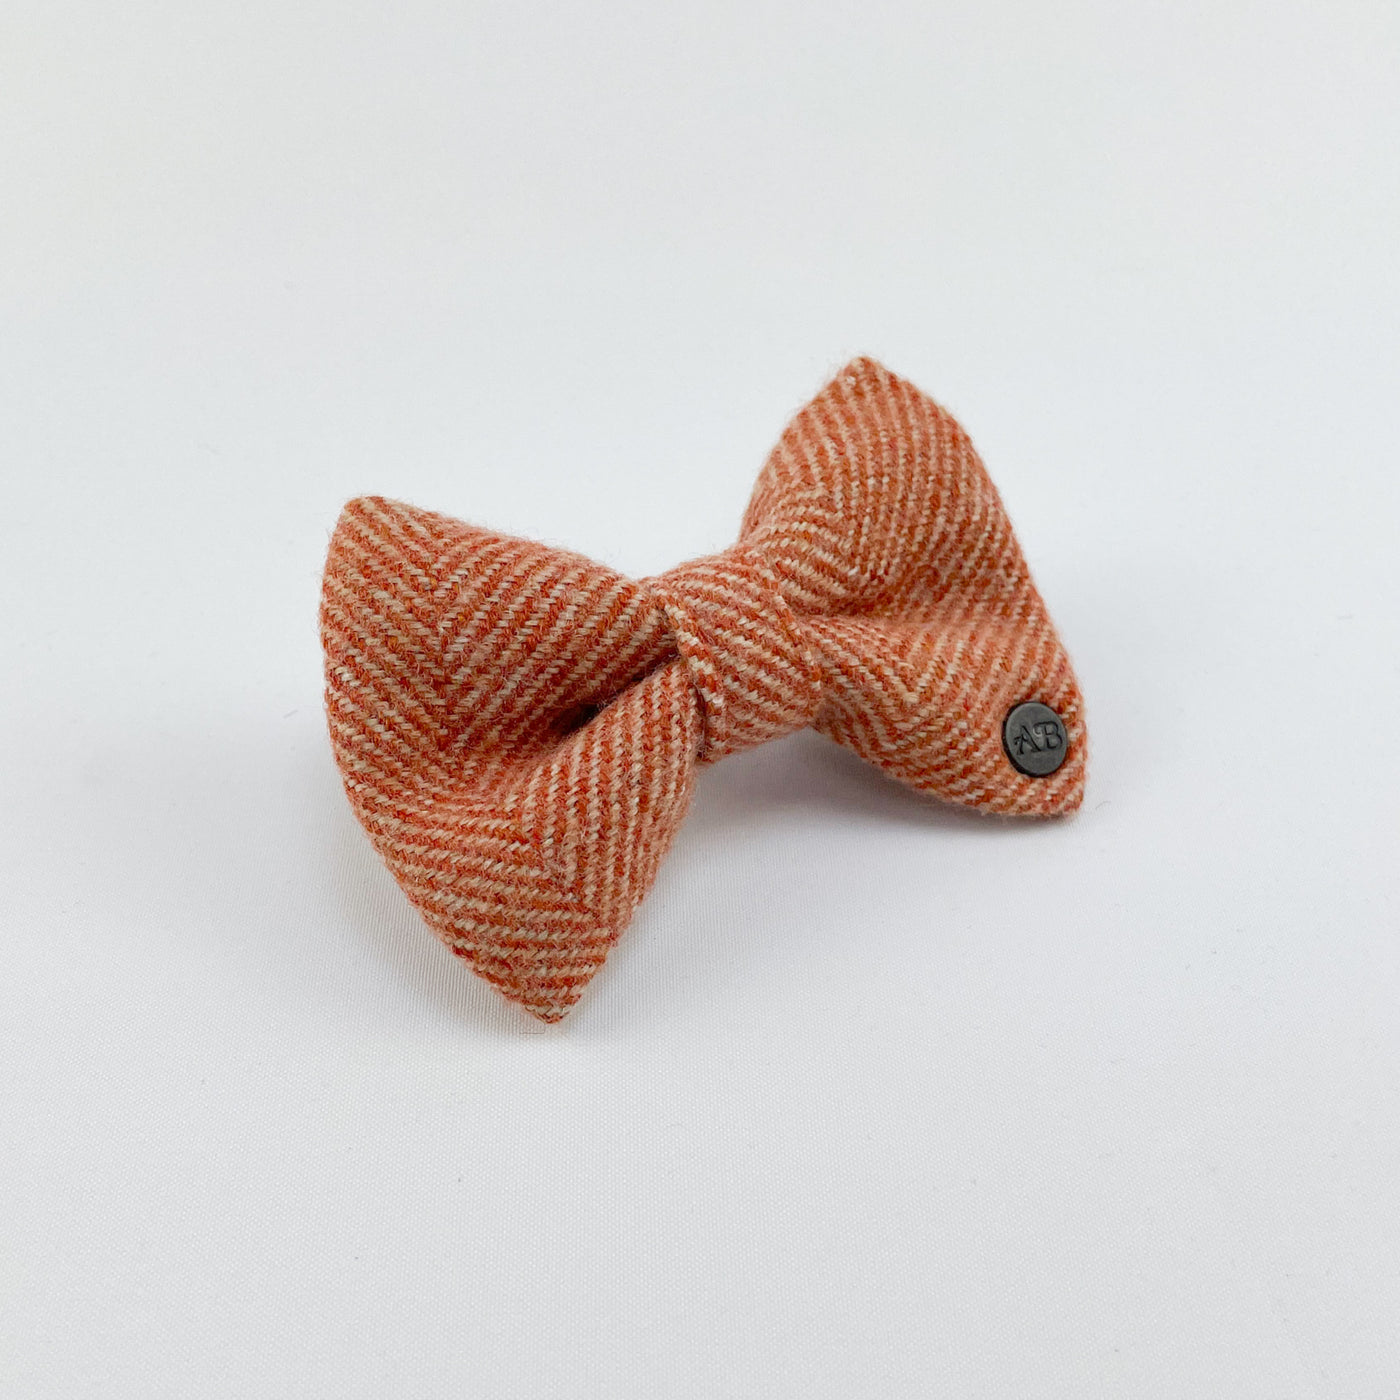 Luxury Burnt Umber Herringbone Tweed Dog Bow Tie.